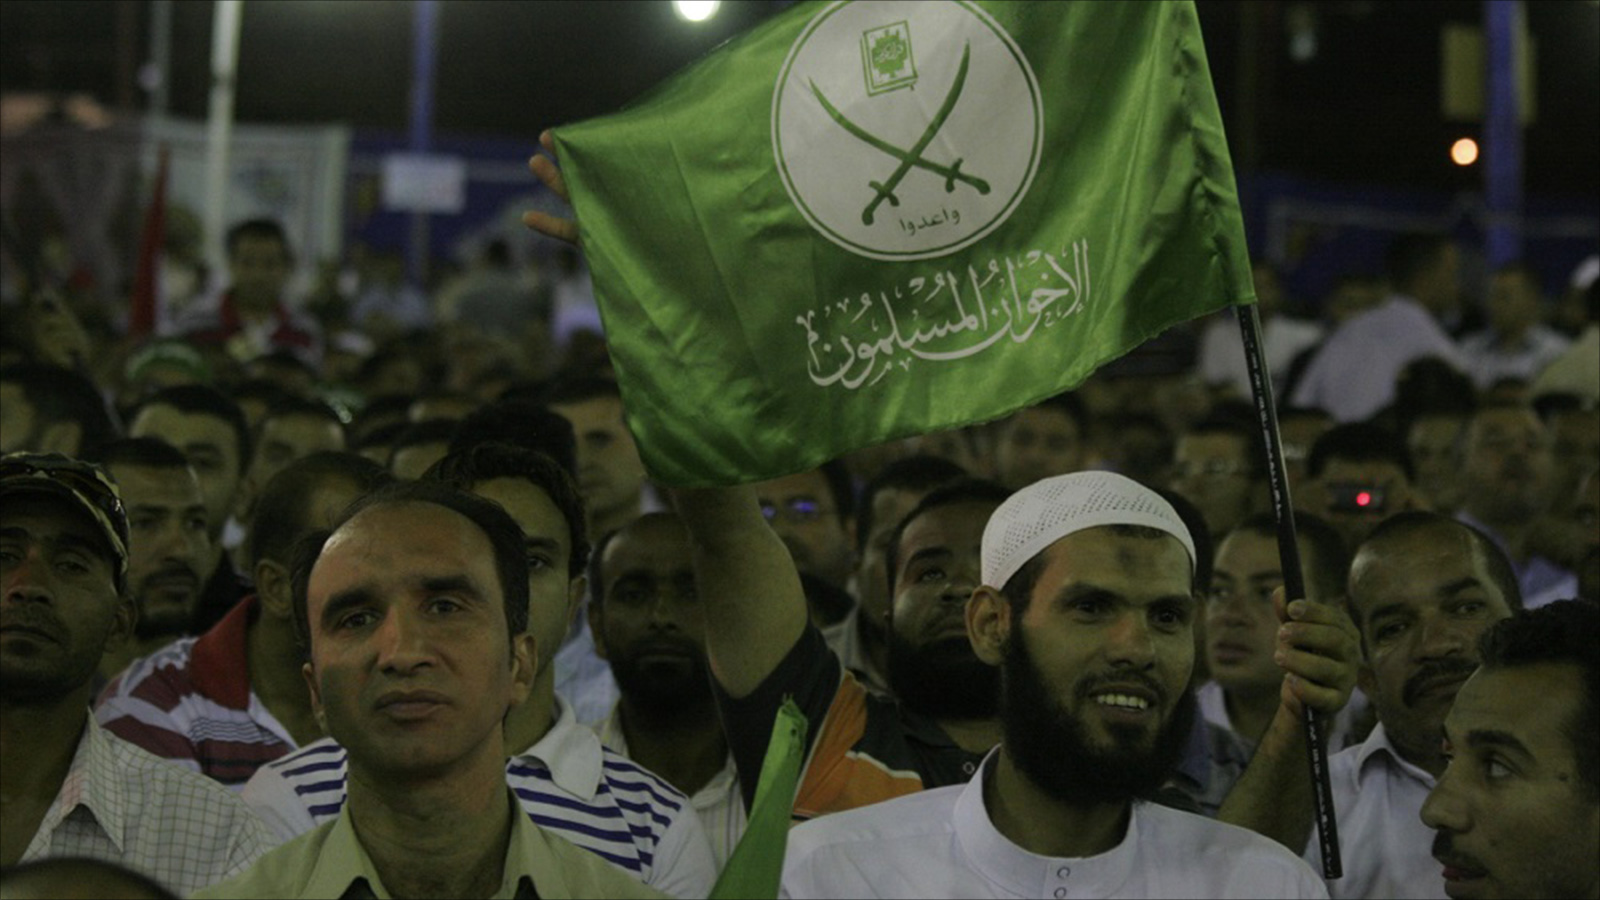 أحداث الربيع العربي ووصول جماعة الإخوان المسلمين للسلطة يؤكد لنا أن الإسلاميين لا يُعادون مبدأ الديموقراطية